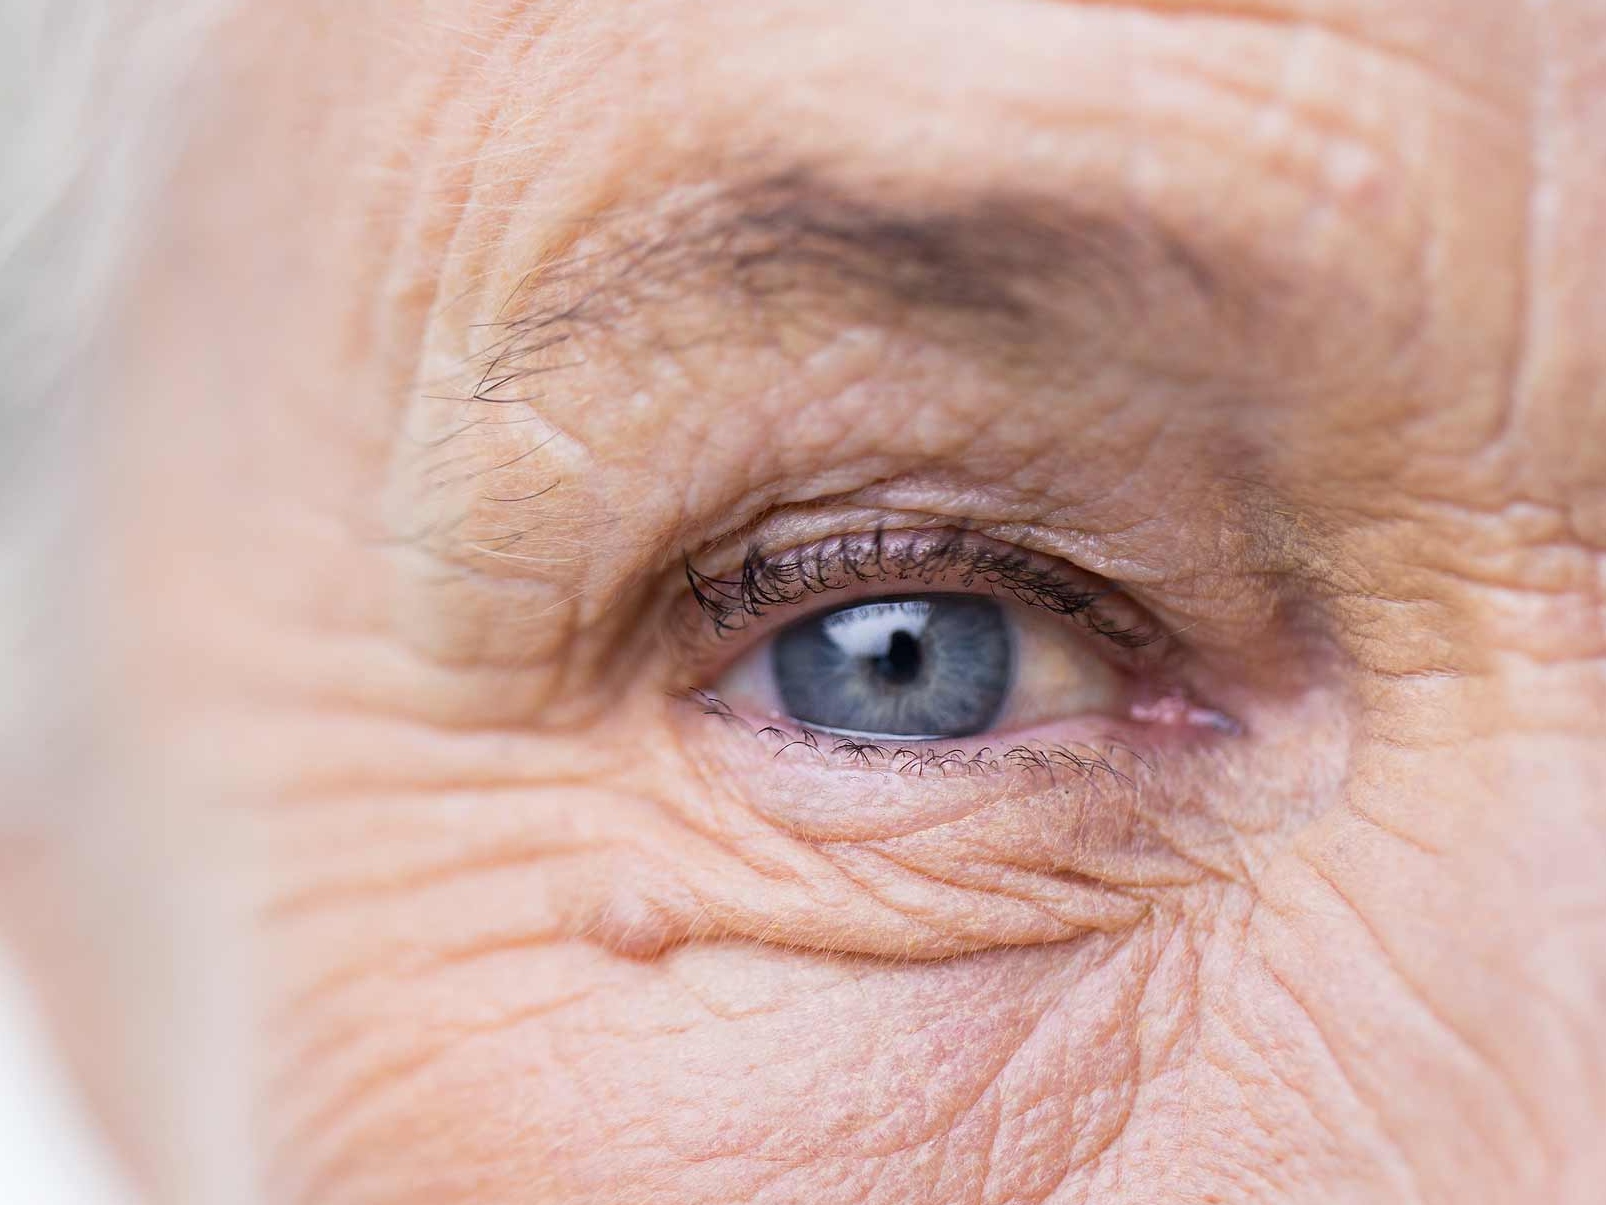 L’image montre un gros plan d’un œil malade pour illustrer l’apparition de risques potentiels pour les annexes oculaires. 